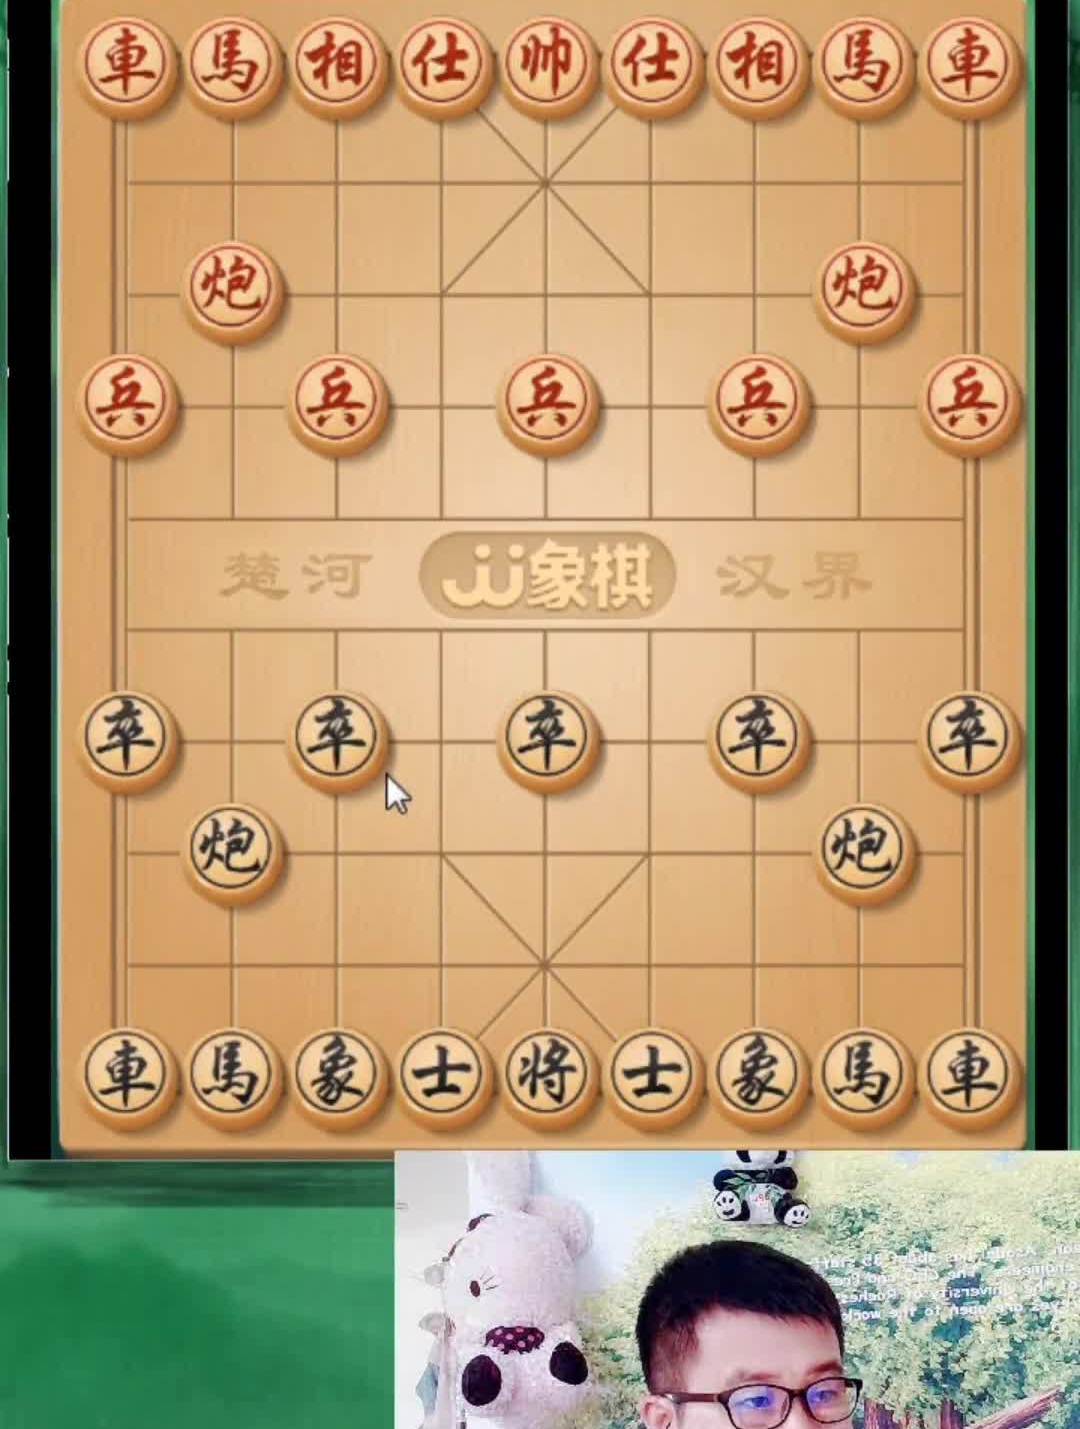 中炮盘头马象棋象棋游戏传统文化